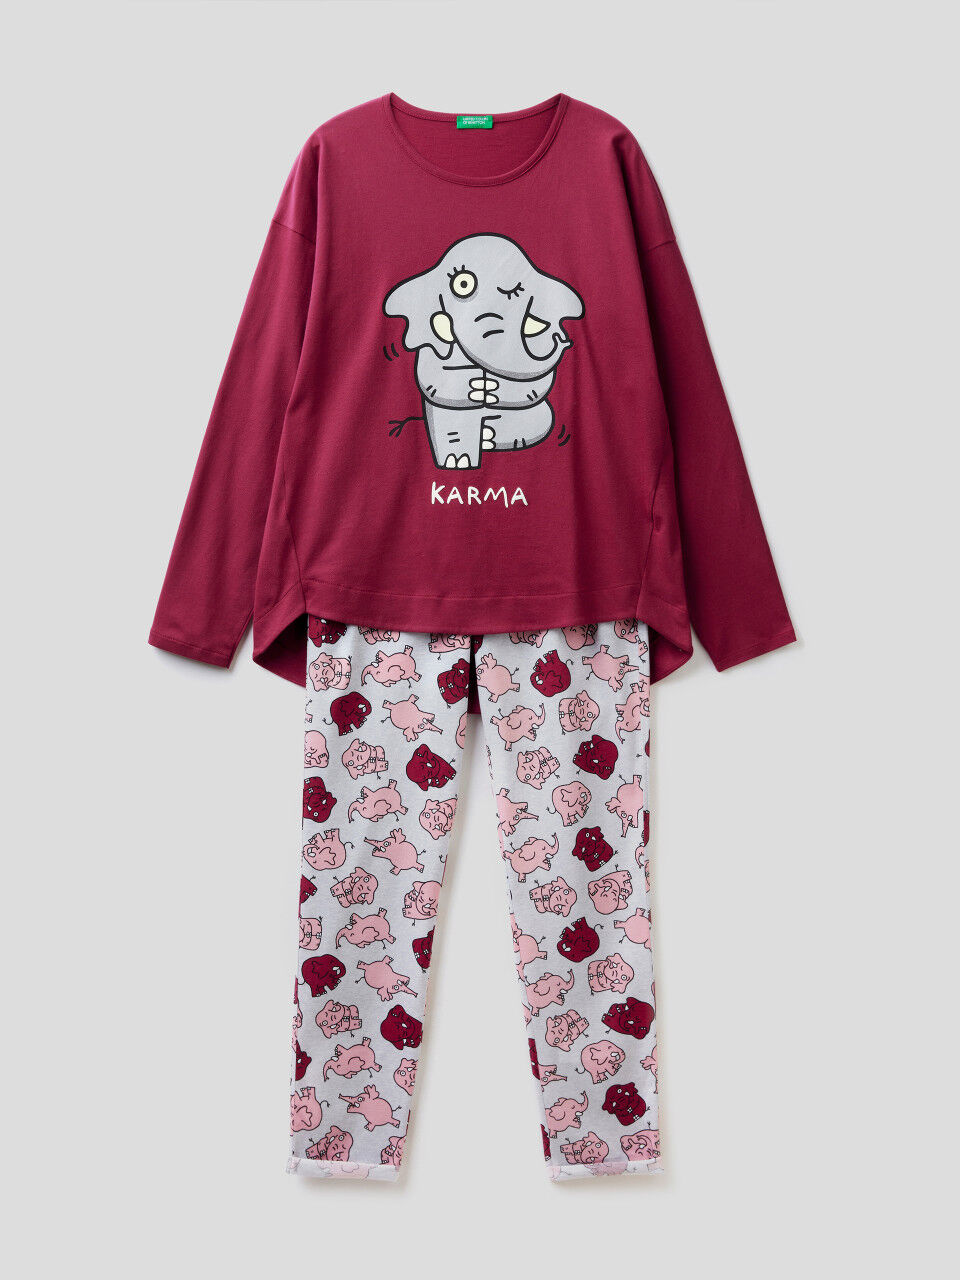 Pyjama pour personnes âgées femme fabriqué en Italie homme 23 anthracite, XL coton hiver automne chaud pyjamas sanitaires homme 